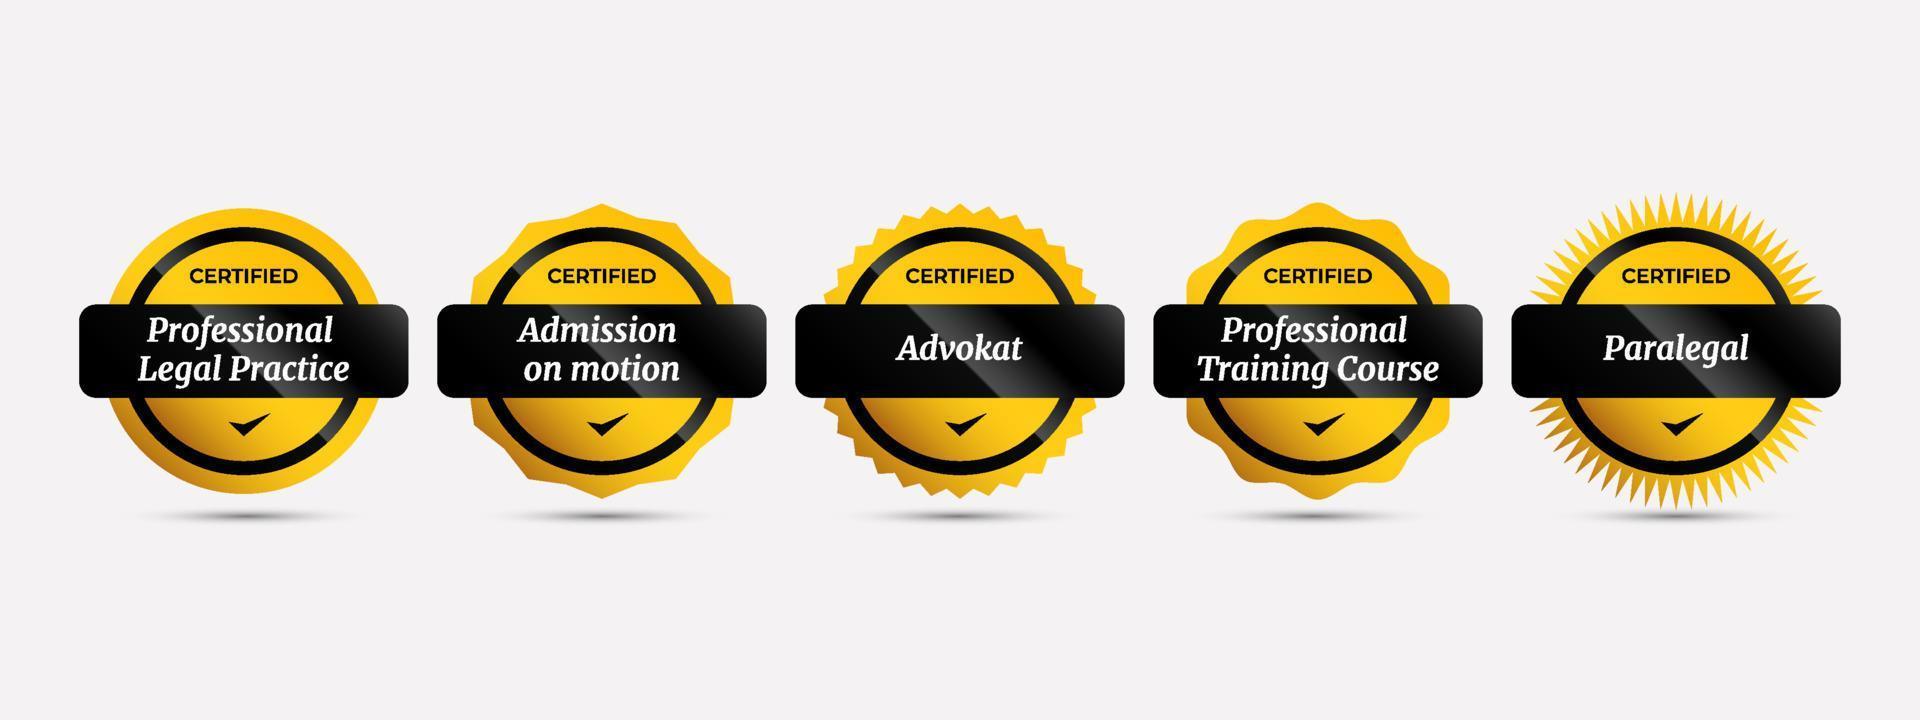 distintivo certificato con lusso giallo e nero. diritto di certificazione professionale in più categorie. illustrazione vettoriale modello icona logo timbro.